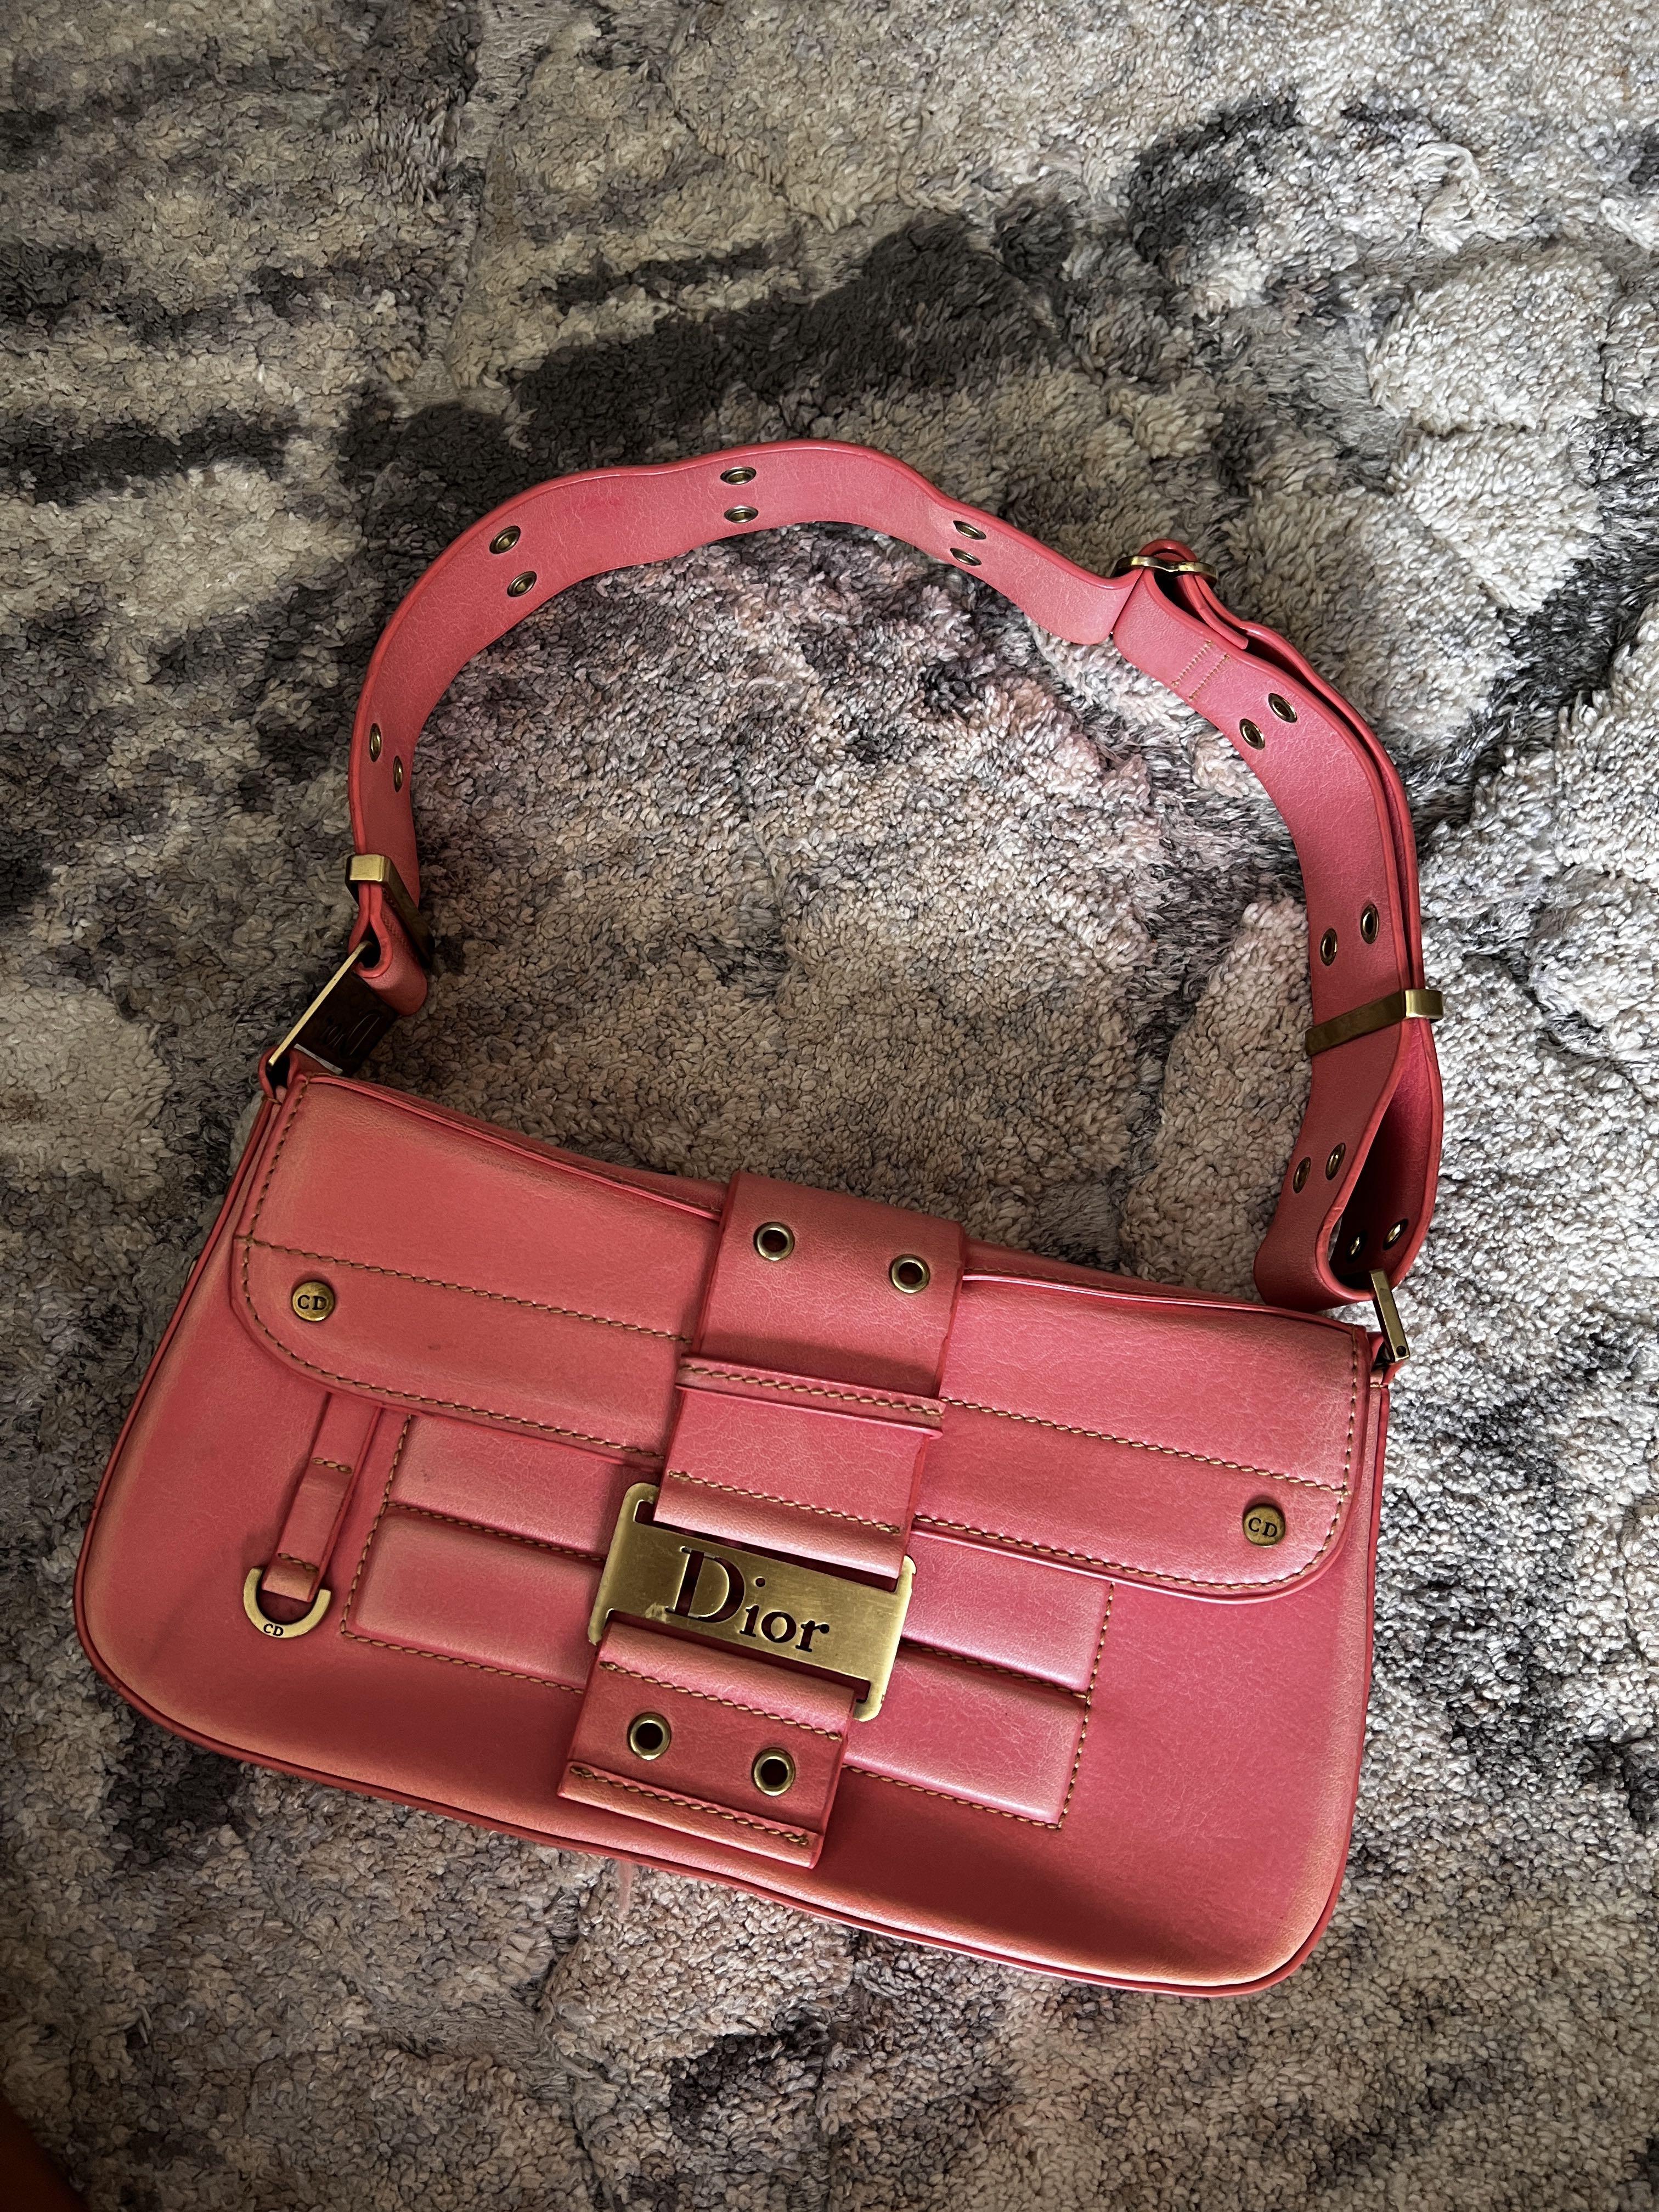 Pre-owned Christian Dior Vintage Street Chic Shoulder Bag